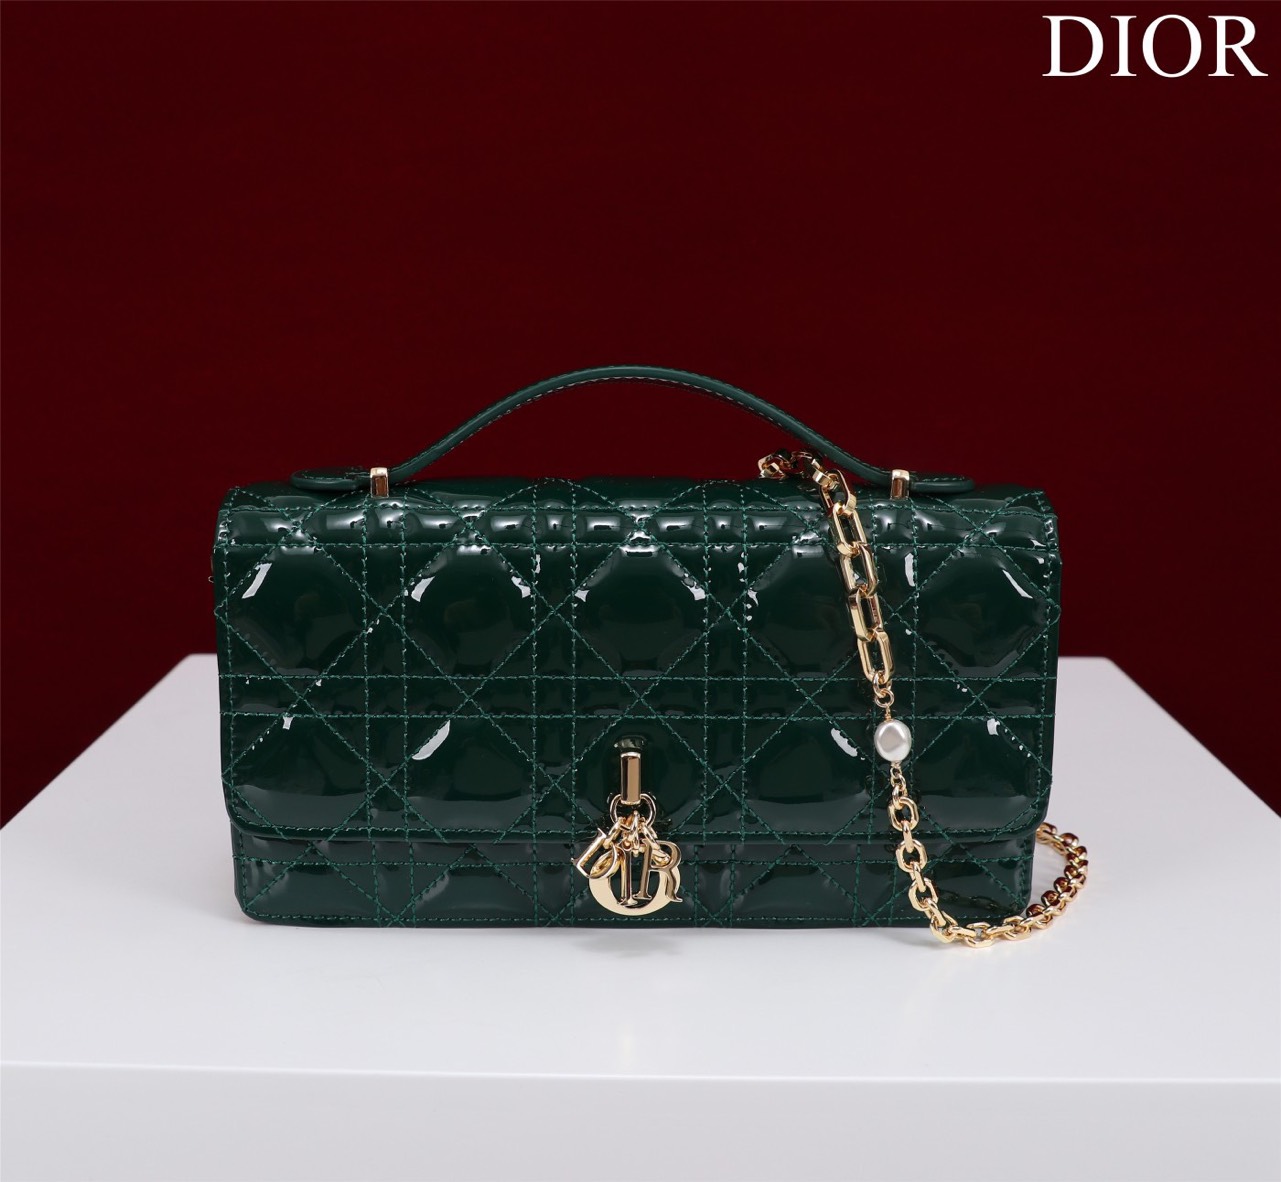 Tổng Hợp Các Mẫu Túi Xách Dior Lady Siêu Cấp Size：21*11.5*4.5cm 098014